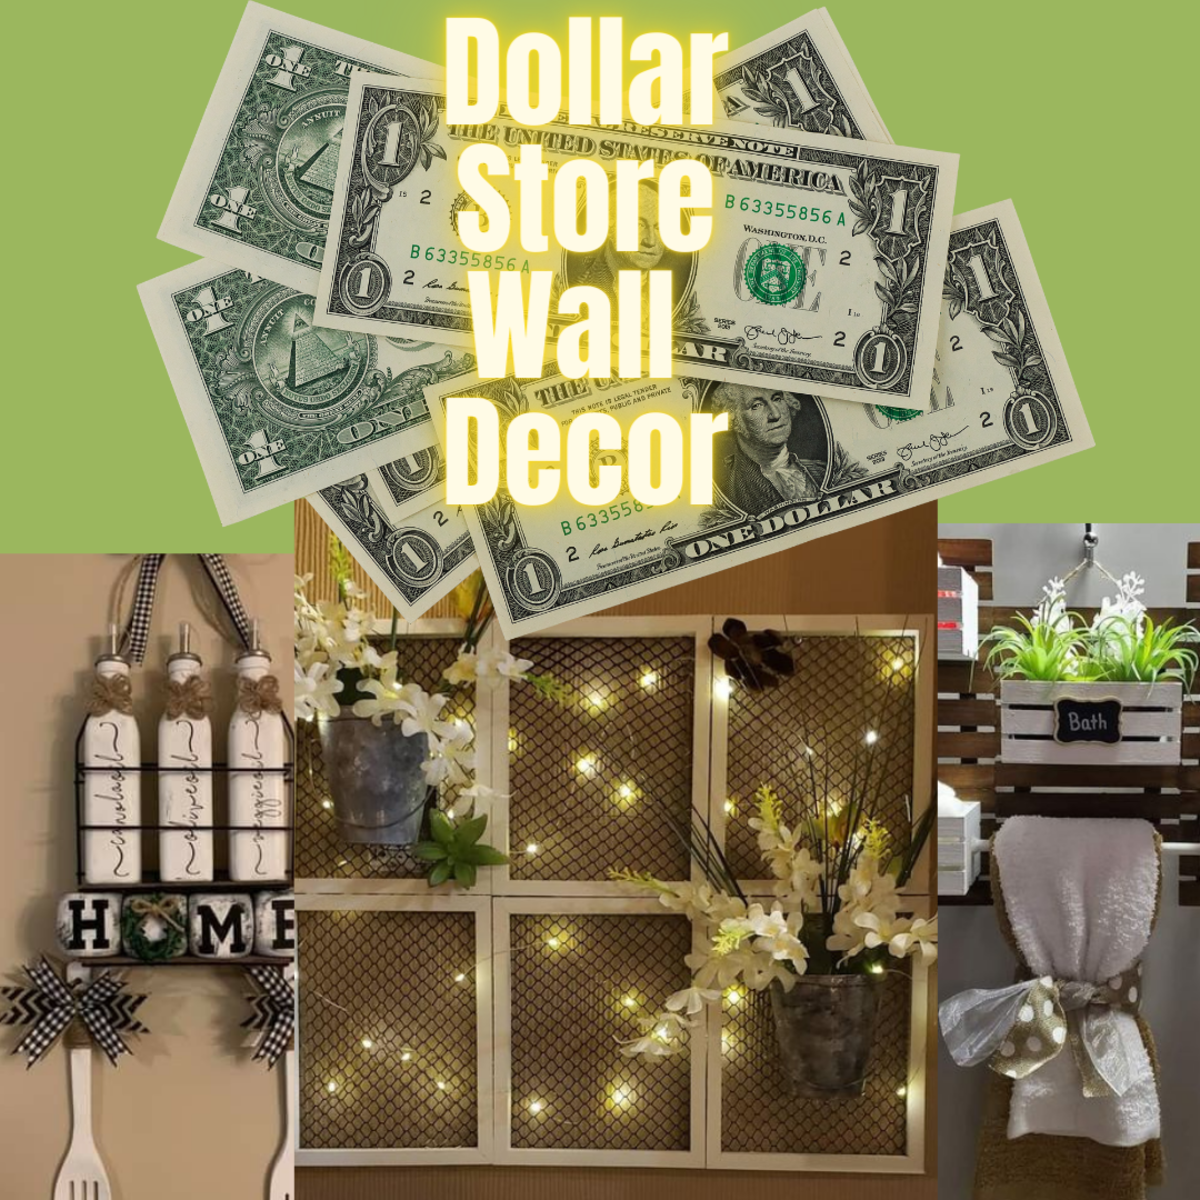 DIY dollar store wall décor ideas